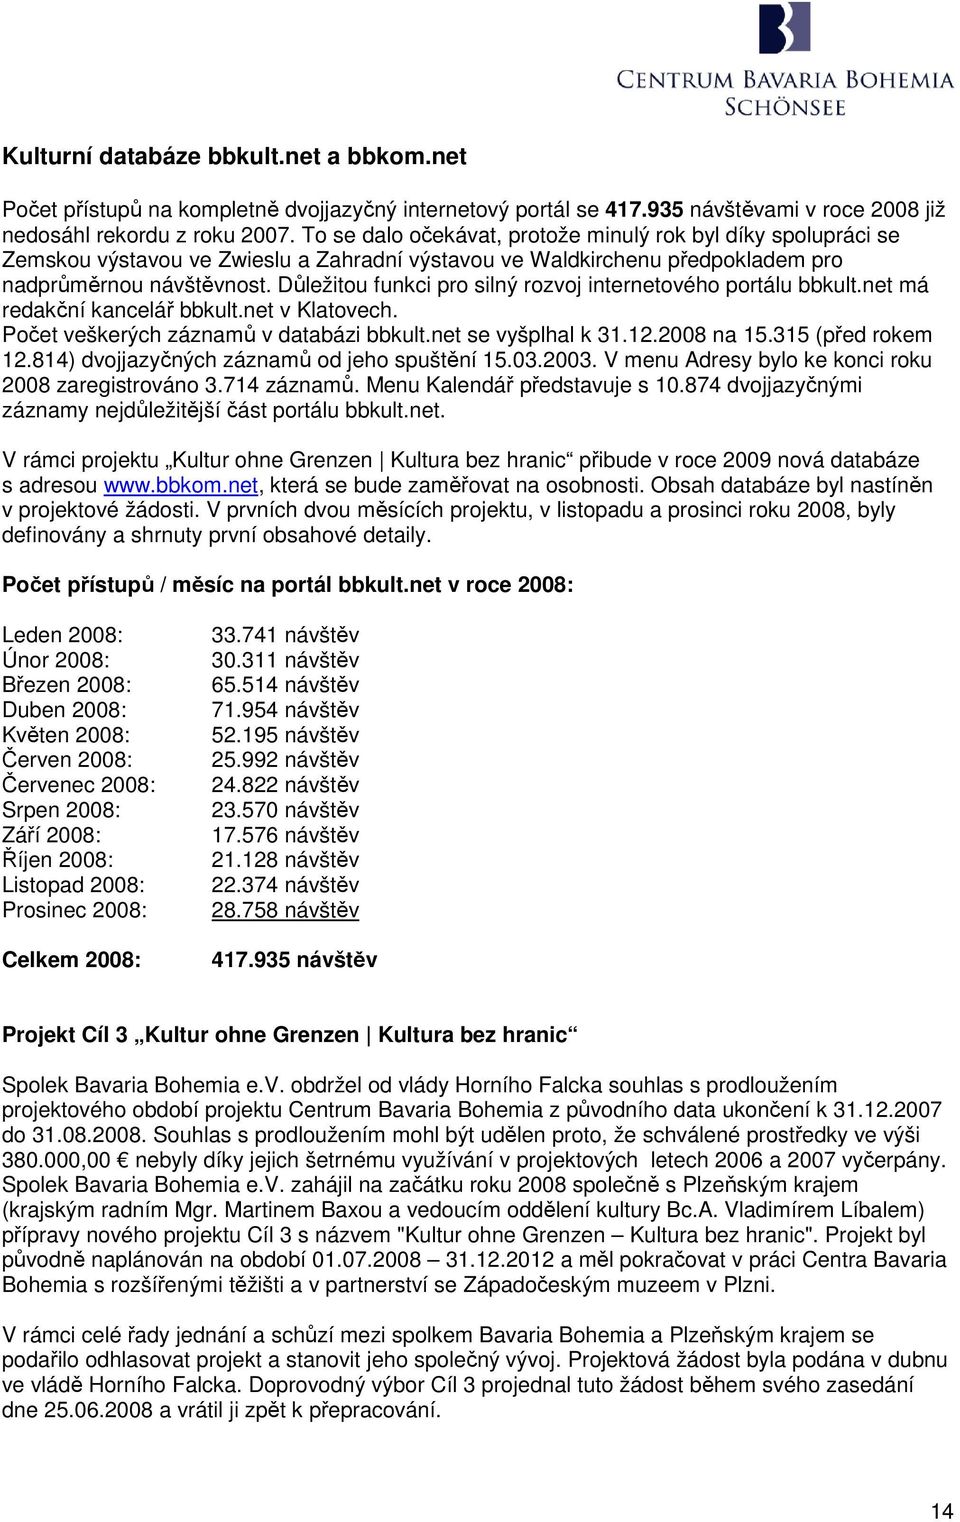 Důležitou funkci pro silný rozvoj internetového portálu bbkult.net má redakční kancelář bbkult.net v Klatovech. Počet veškerých záznamů v databázi bbkult.net se vyšplhal k 31.12.2008 na 15.